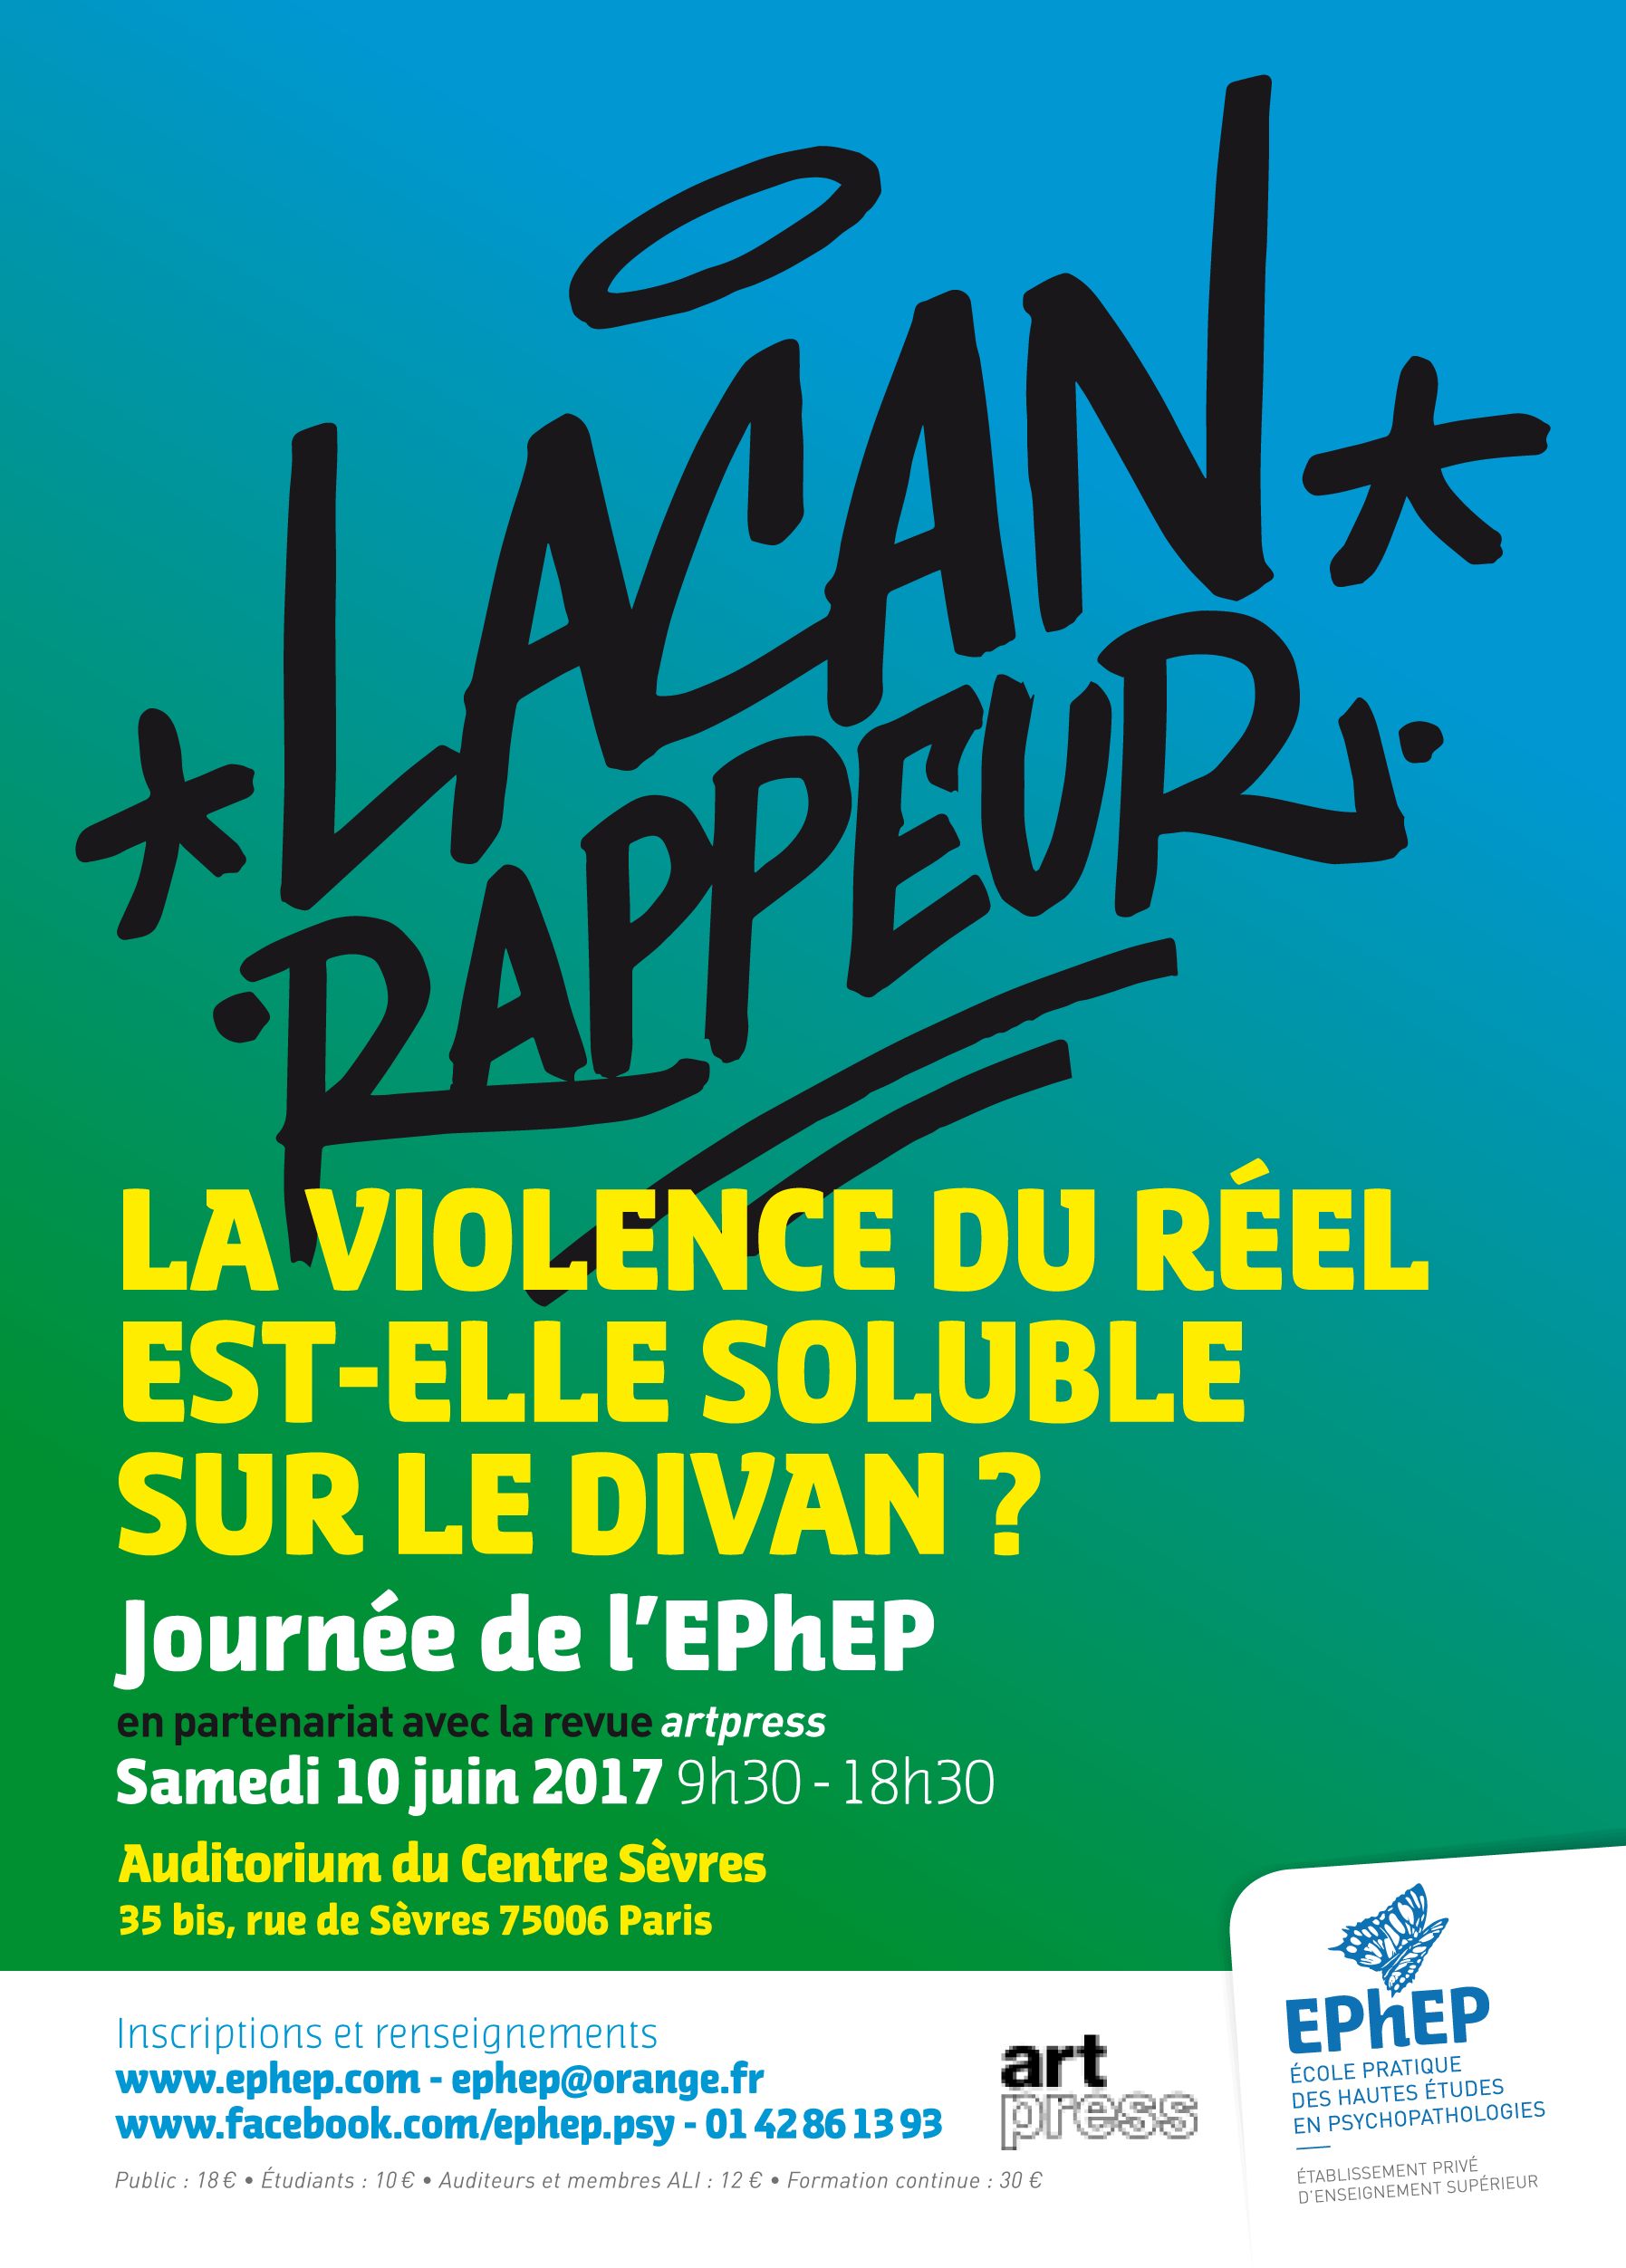 Journée EPhEP "Lacan rappeur" 2017